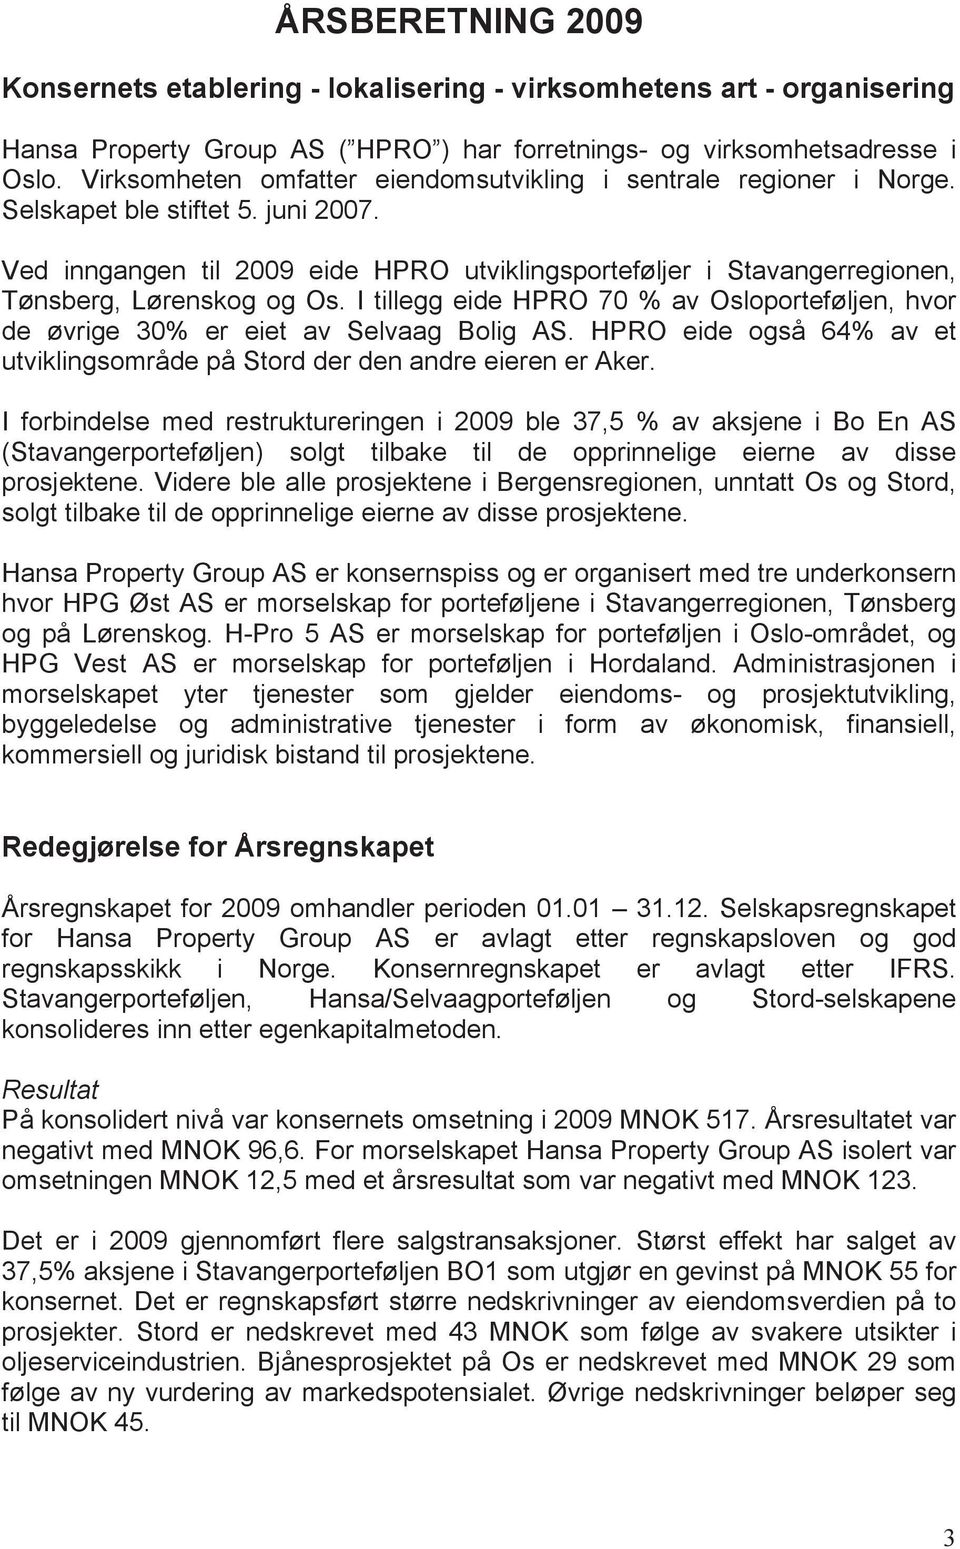 Ved inngangen til 2009 eide HPRO utviklingsporteføljer i Stavangerregionen, Tønsberg, Lørenskog og Os. I tillegg eide HPRO 70 % av Osloporteføljen, hvor de øvrige 30% er eiet av Selvaag Bolig AS.